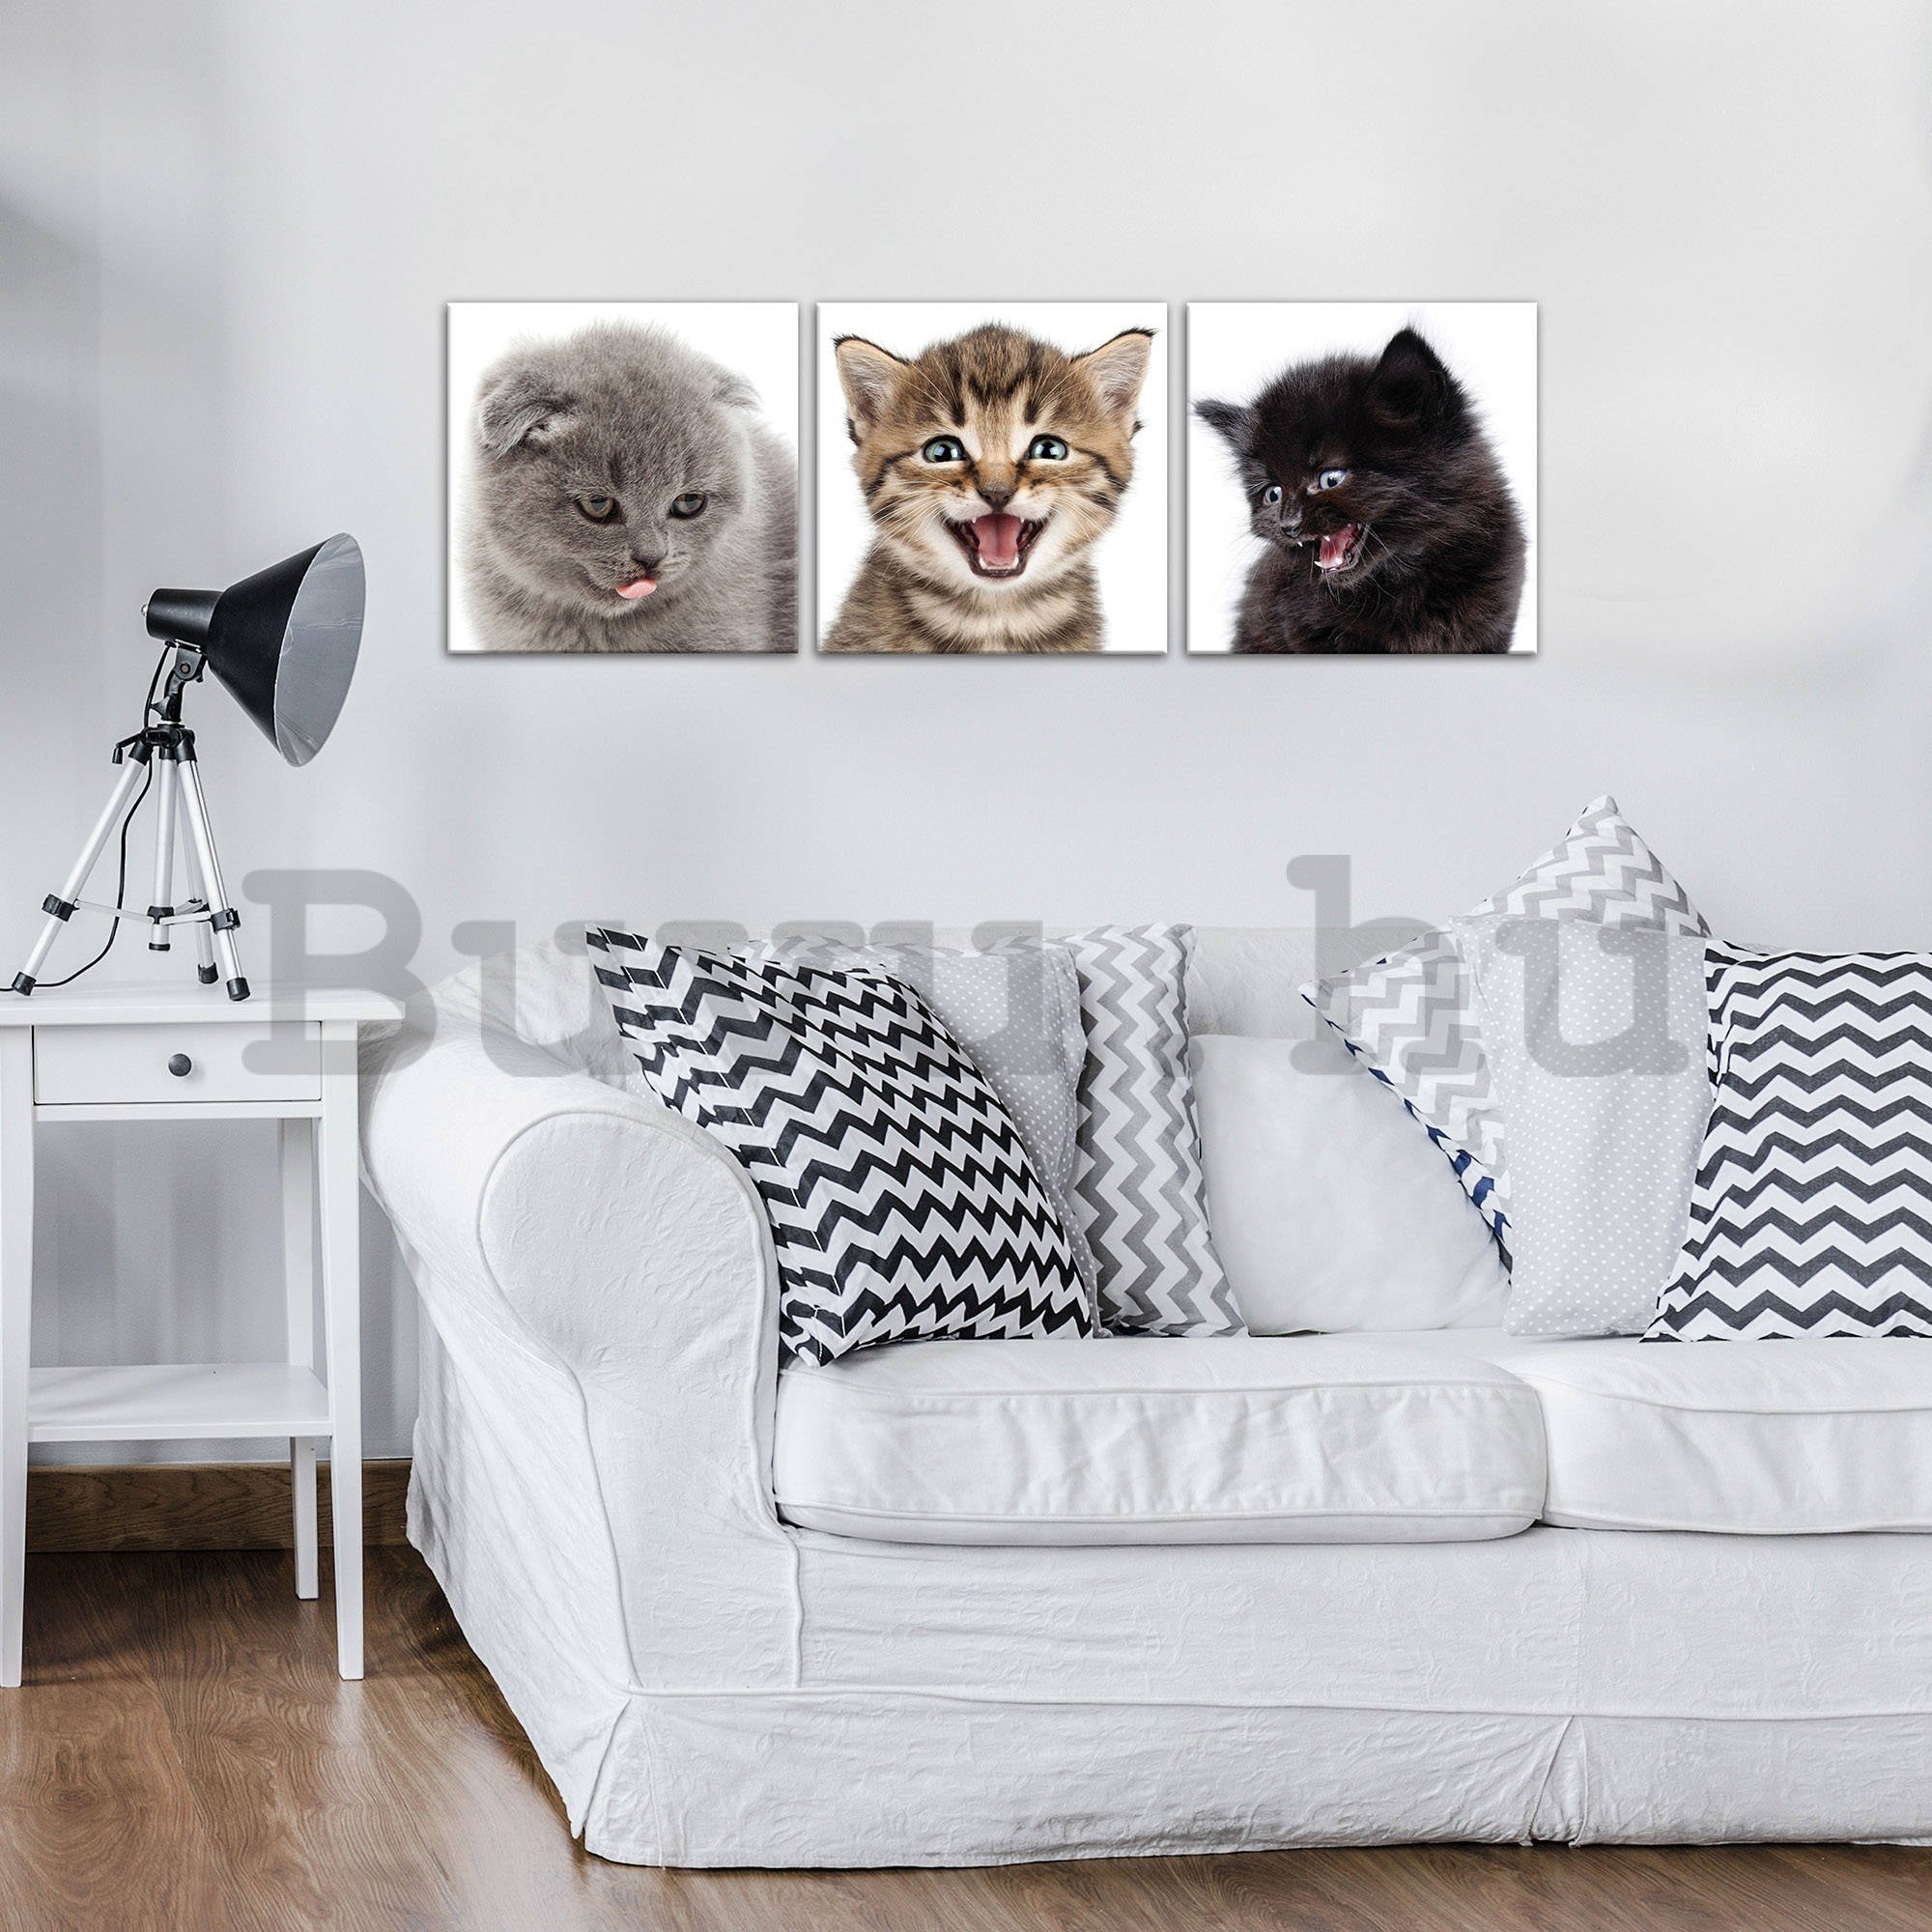 Vászonkép: Kittens (1) - készlet 3db 25x25cm